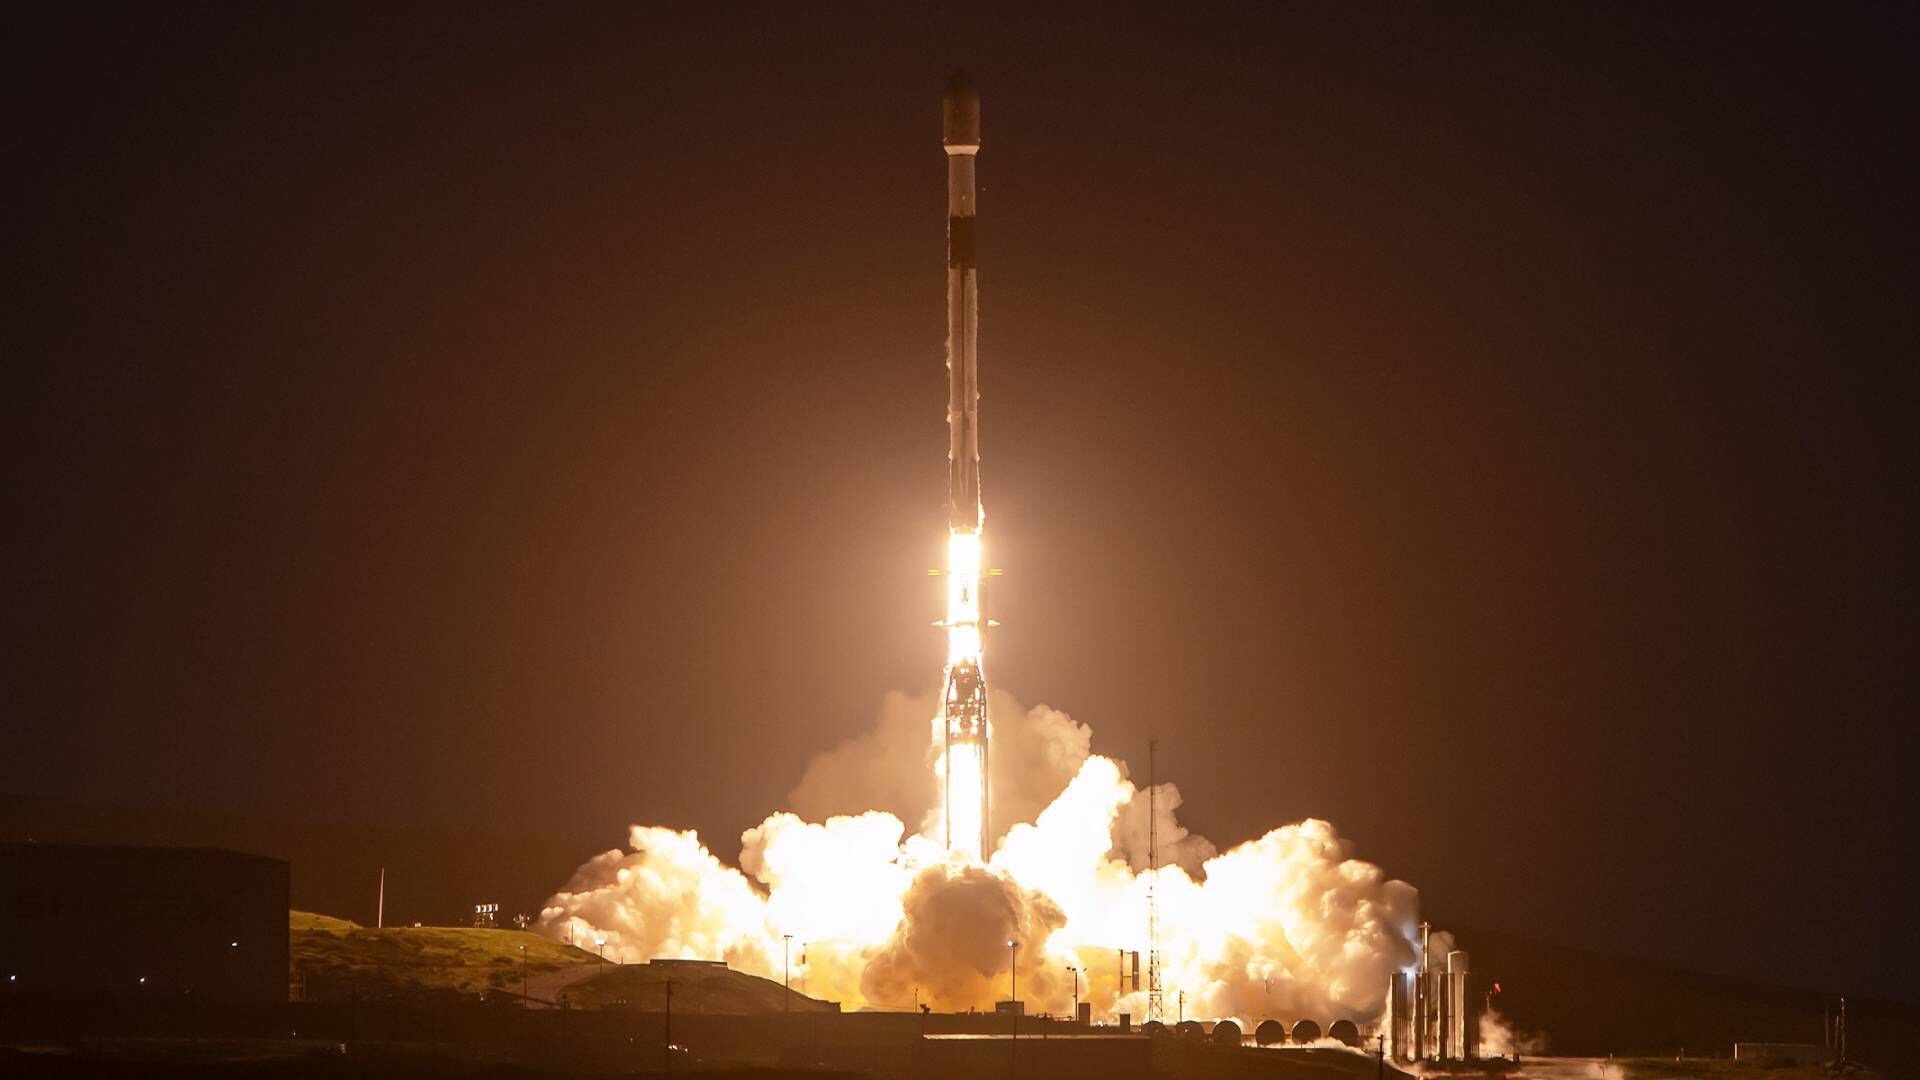 El lanzamiento de este cohete representa avances significativos en el estudio del espacio.